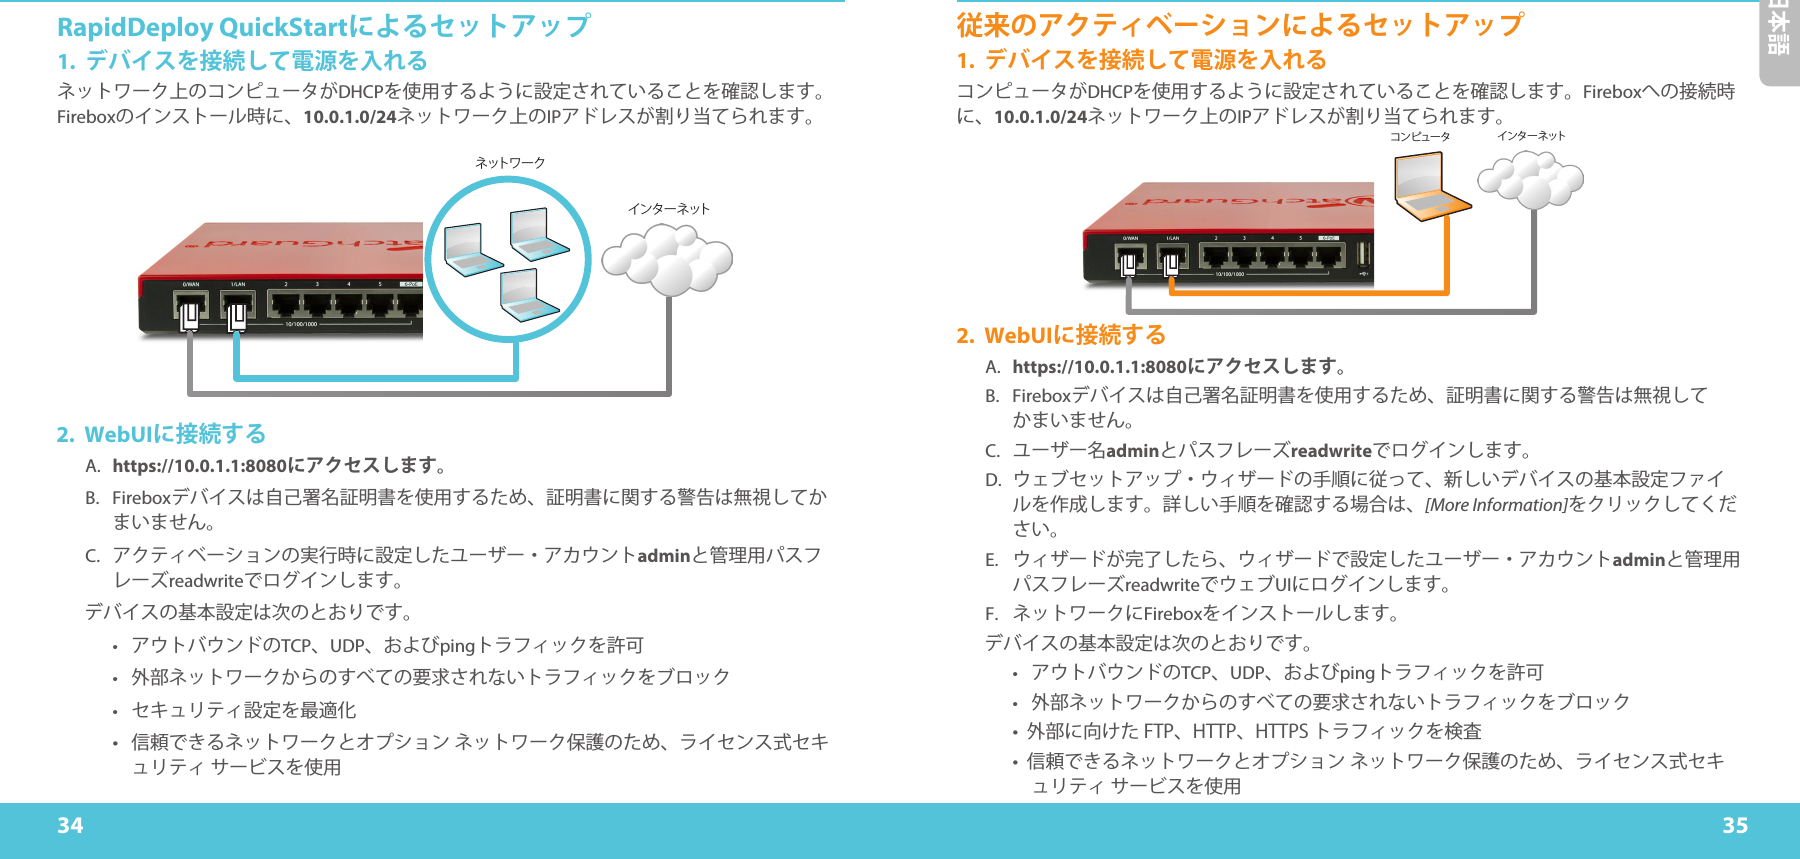 34 35日本語RapidDeploy QuickStartによるセットアップ1.  デバイスを接続して電源を入れるネットワーク上のコンピュータがDHCPを使用するように設定されていることを確認します。Fireboxのインストール時に、10.0.1.0/24ネットワーク上のIPアドレスが割り当てられます。 ネ ット ワ ー クインターネットコンピュータ インターネット2. WebUIに接続するA.  https://10.0.1.1:8080にアクセスします。B. Fireboxデバイスは自己署名証明書を使用するため、証明書に関する警告は無視してかまいません。C.  アクティベーションの実行時に設定したユーザー・アカウントadminと管理用パスフレーズreadwriteでログインします。デバイスの基本設定は次のとおりです。•  アウトバウンドのTCP、UDP、およびpingトラフィックを許可•  外部ネットワークからのすべての要求されないトラフィックをブロック•  セキュリティ設定を最適化•信頼できるネットワークとオプションネットワーク保護のため、ライセンス式セキュリティサービスを使用従来のアクティベーションによるセットアップ1.  デバイスを接続して電源を入れるコンピュータがDHCPを使用するように設定されていることを確認します。Fireboxへの接続時に、10.0.1.0/24ネットワーク上のIPアドレスが割り当てられます。2. WebUIに接続するA.  https://10.0.1.1:8080にアクセスします。B. Fireboxデバイスは自己署名証明書を使用するため、証明書に関する警告は無視してかまいません。C.  ユーザー名adminとパスフレーズreadwriteでログインします。D.  ウェブセットアップ・ウィザードの手順に従って、新しいデバイスの基本設定ファイルを作成します。詳しい手順を確認する場合は、[More Information]をクリックしてください。E.  ウィザードが完了したら、ウィザードで設定したユーザー・アカウントadminと管理用パスフレーズreadwriteでウェブUIにログインします。F.  ネットワークにFireboxをインストールします。デバイスの基本設定は次のとおりです。•  アウトバウンドのTCP、UDP、およびpingトラフィックを許可•  外部ネットワークからのすべての要求されないトラフィックをブロック•外部に向けたFTP、HTTP、HTTPSトラフィックを検査•信頼できるネットワークとオプションネットワーク保護のため、ライセンス式セキュリティサービスを使用